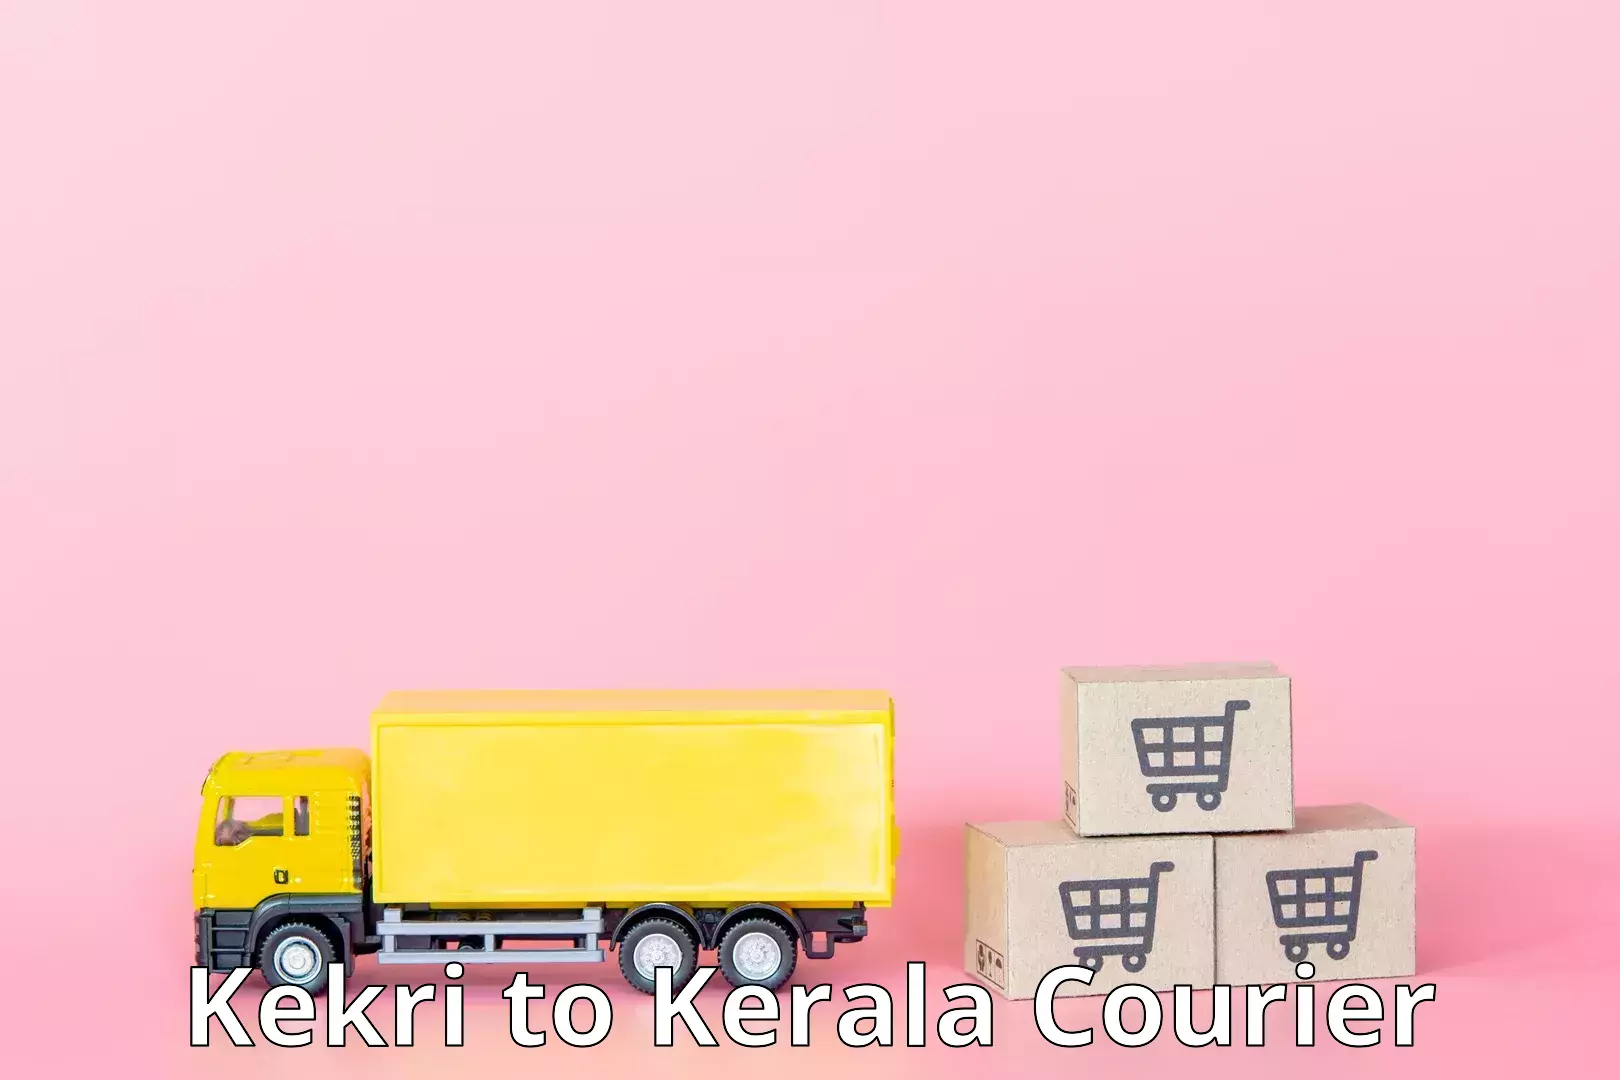 Multi-modal transport Kekri to Kerala